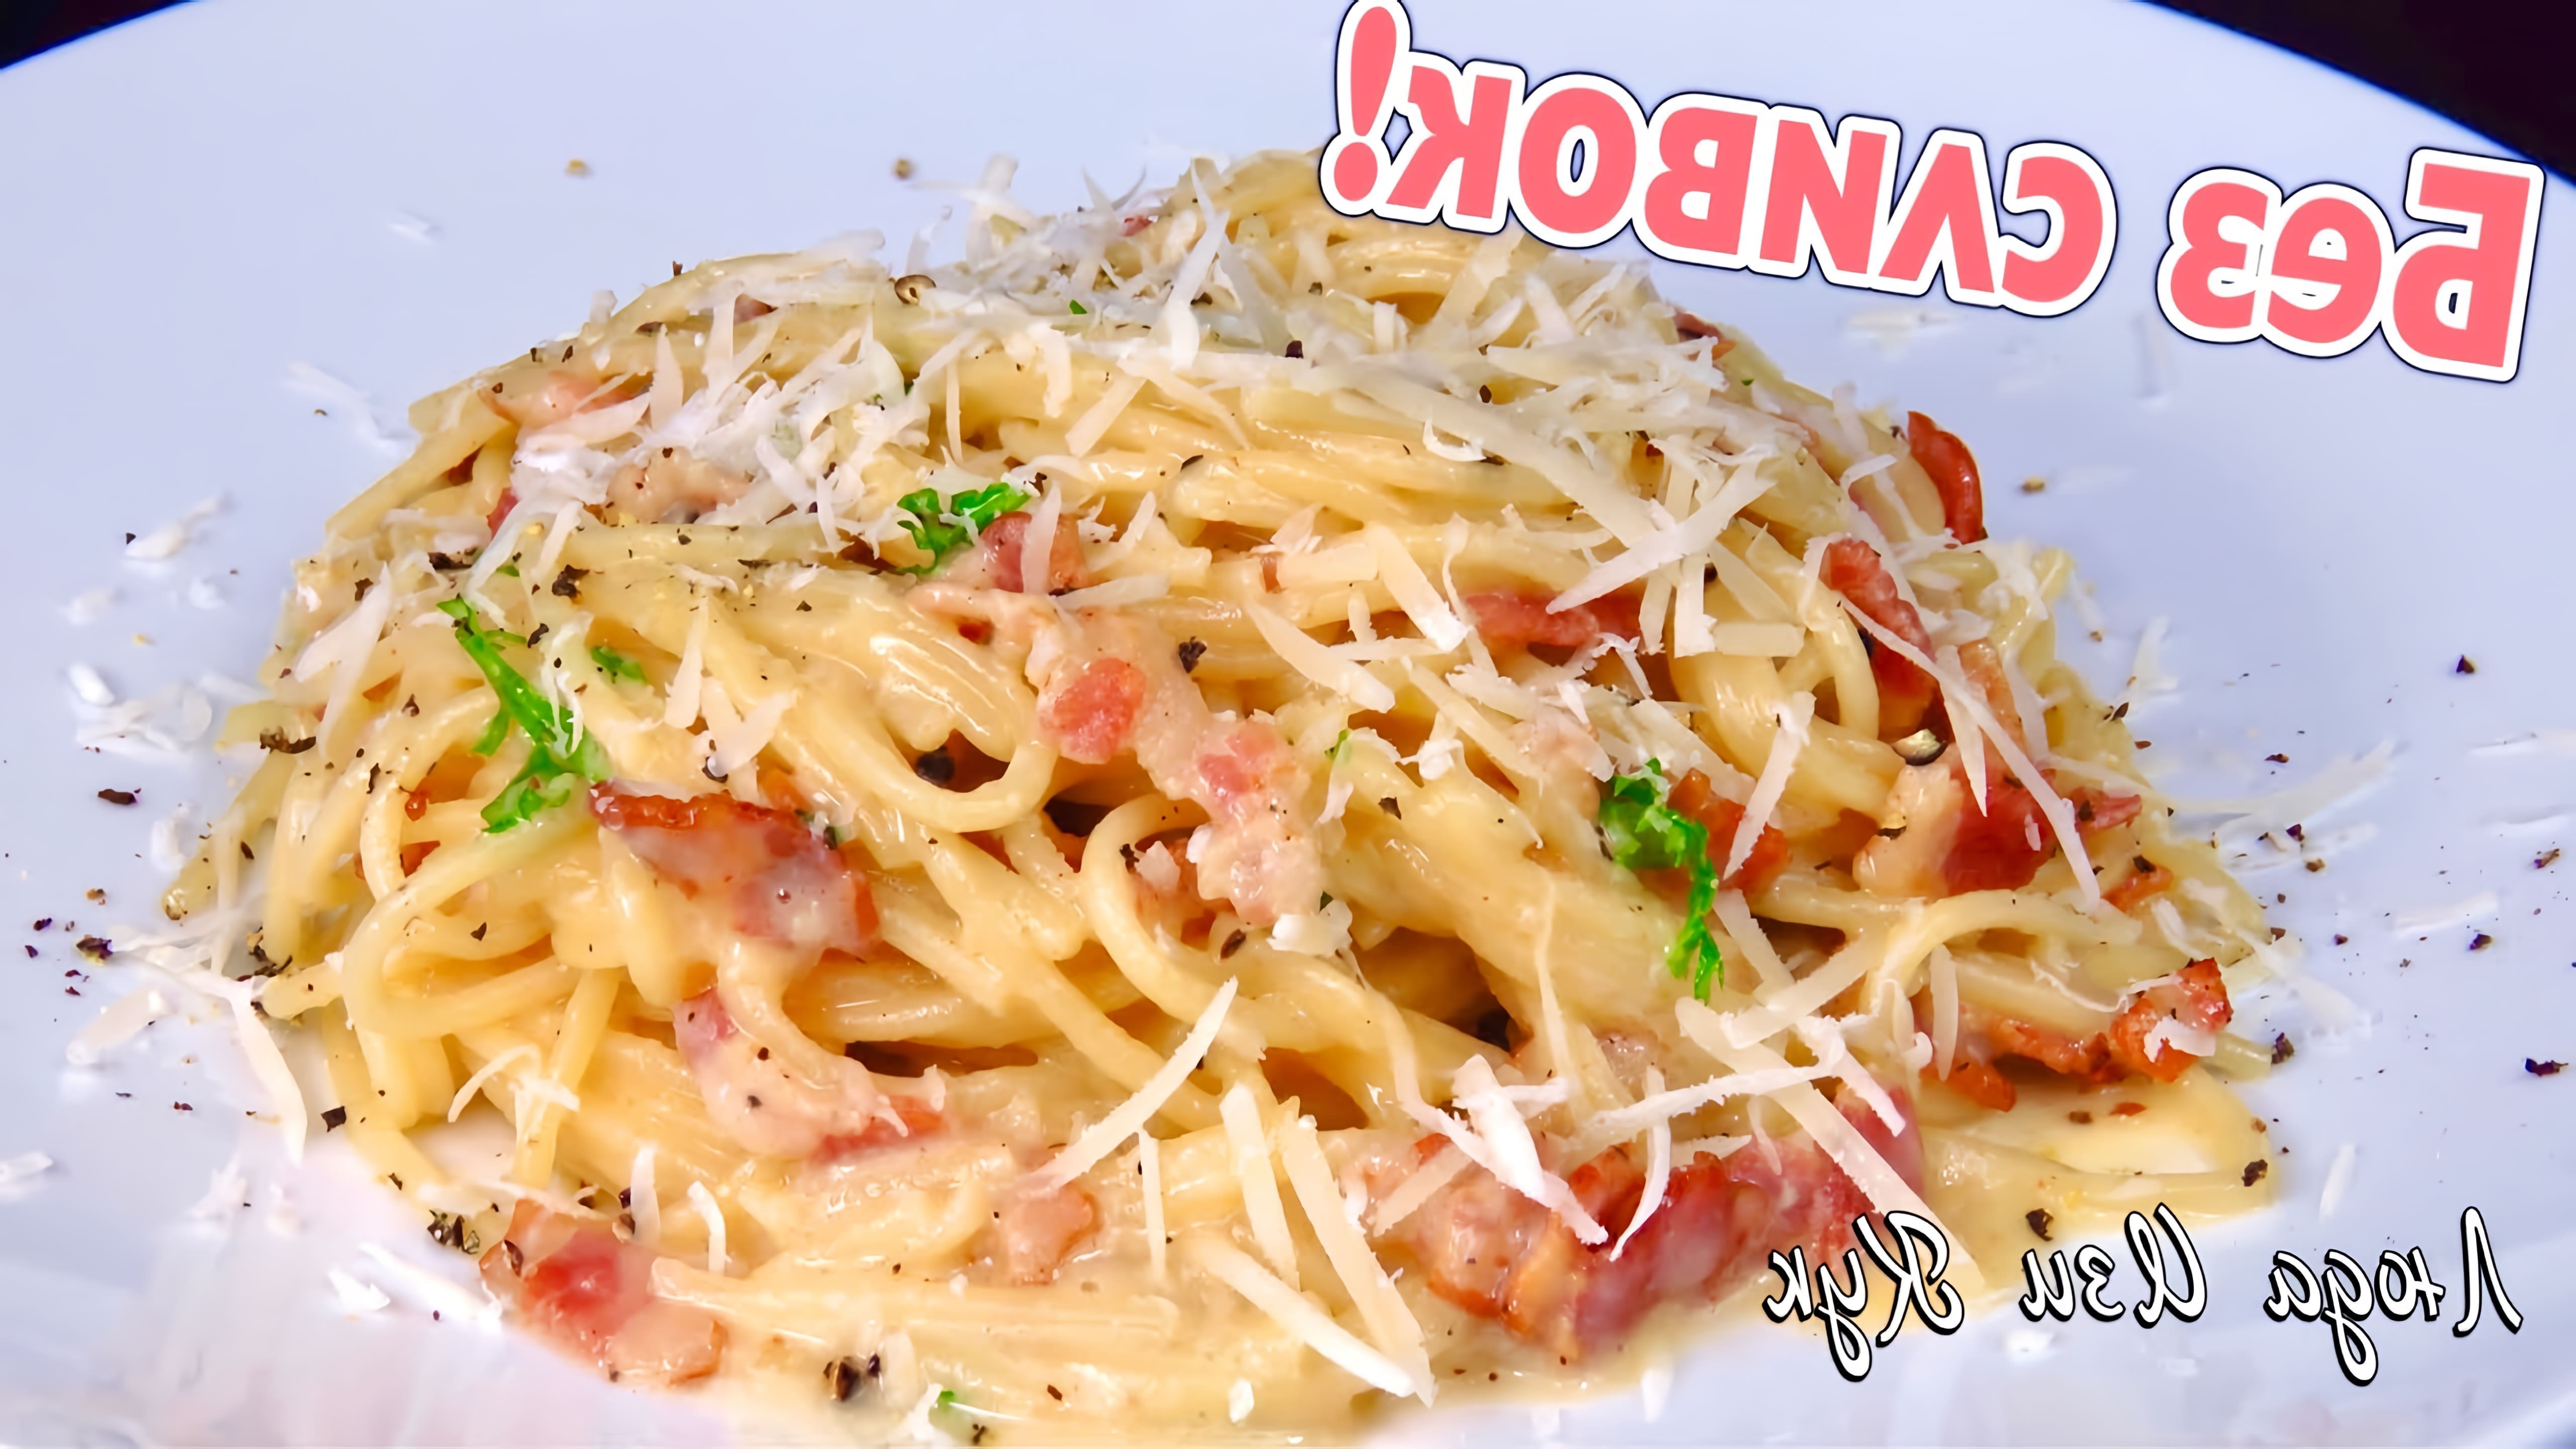 Видео как приготовить пасту карбонара, классическое итальянское блюдо из спагетти, бекона, яиц, сыра и черного перца